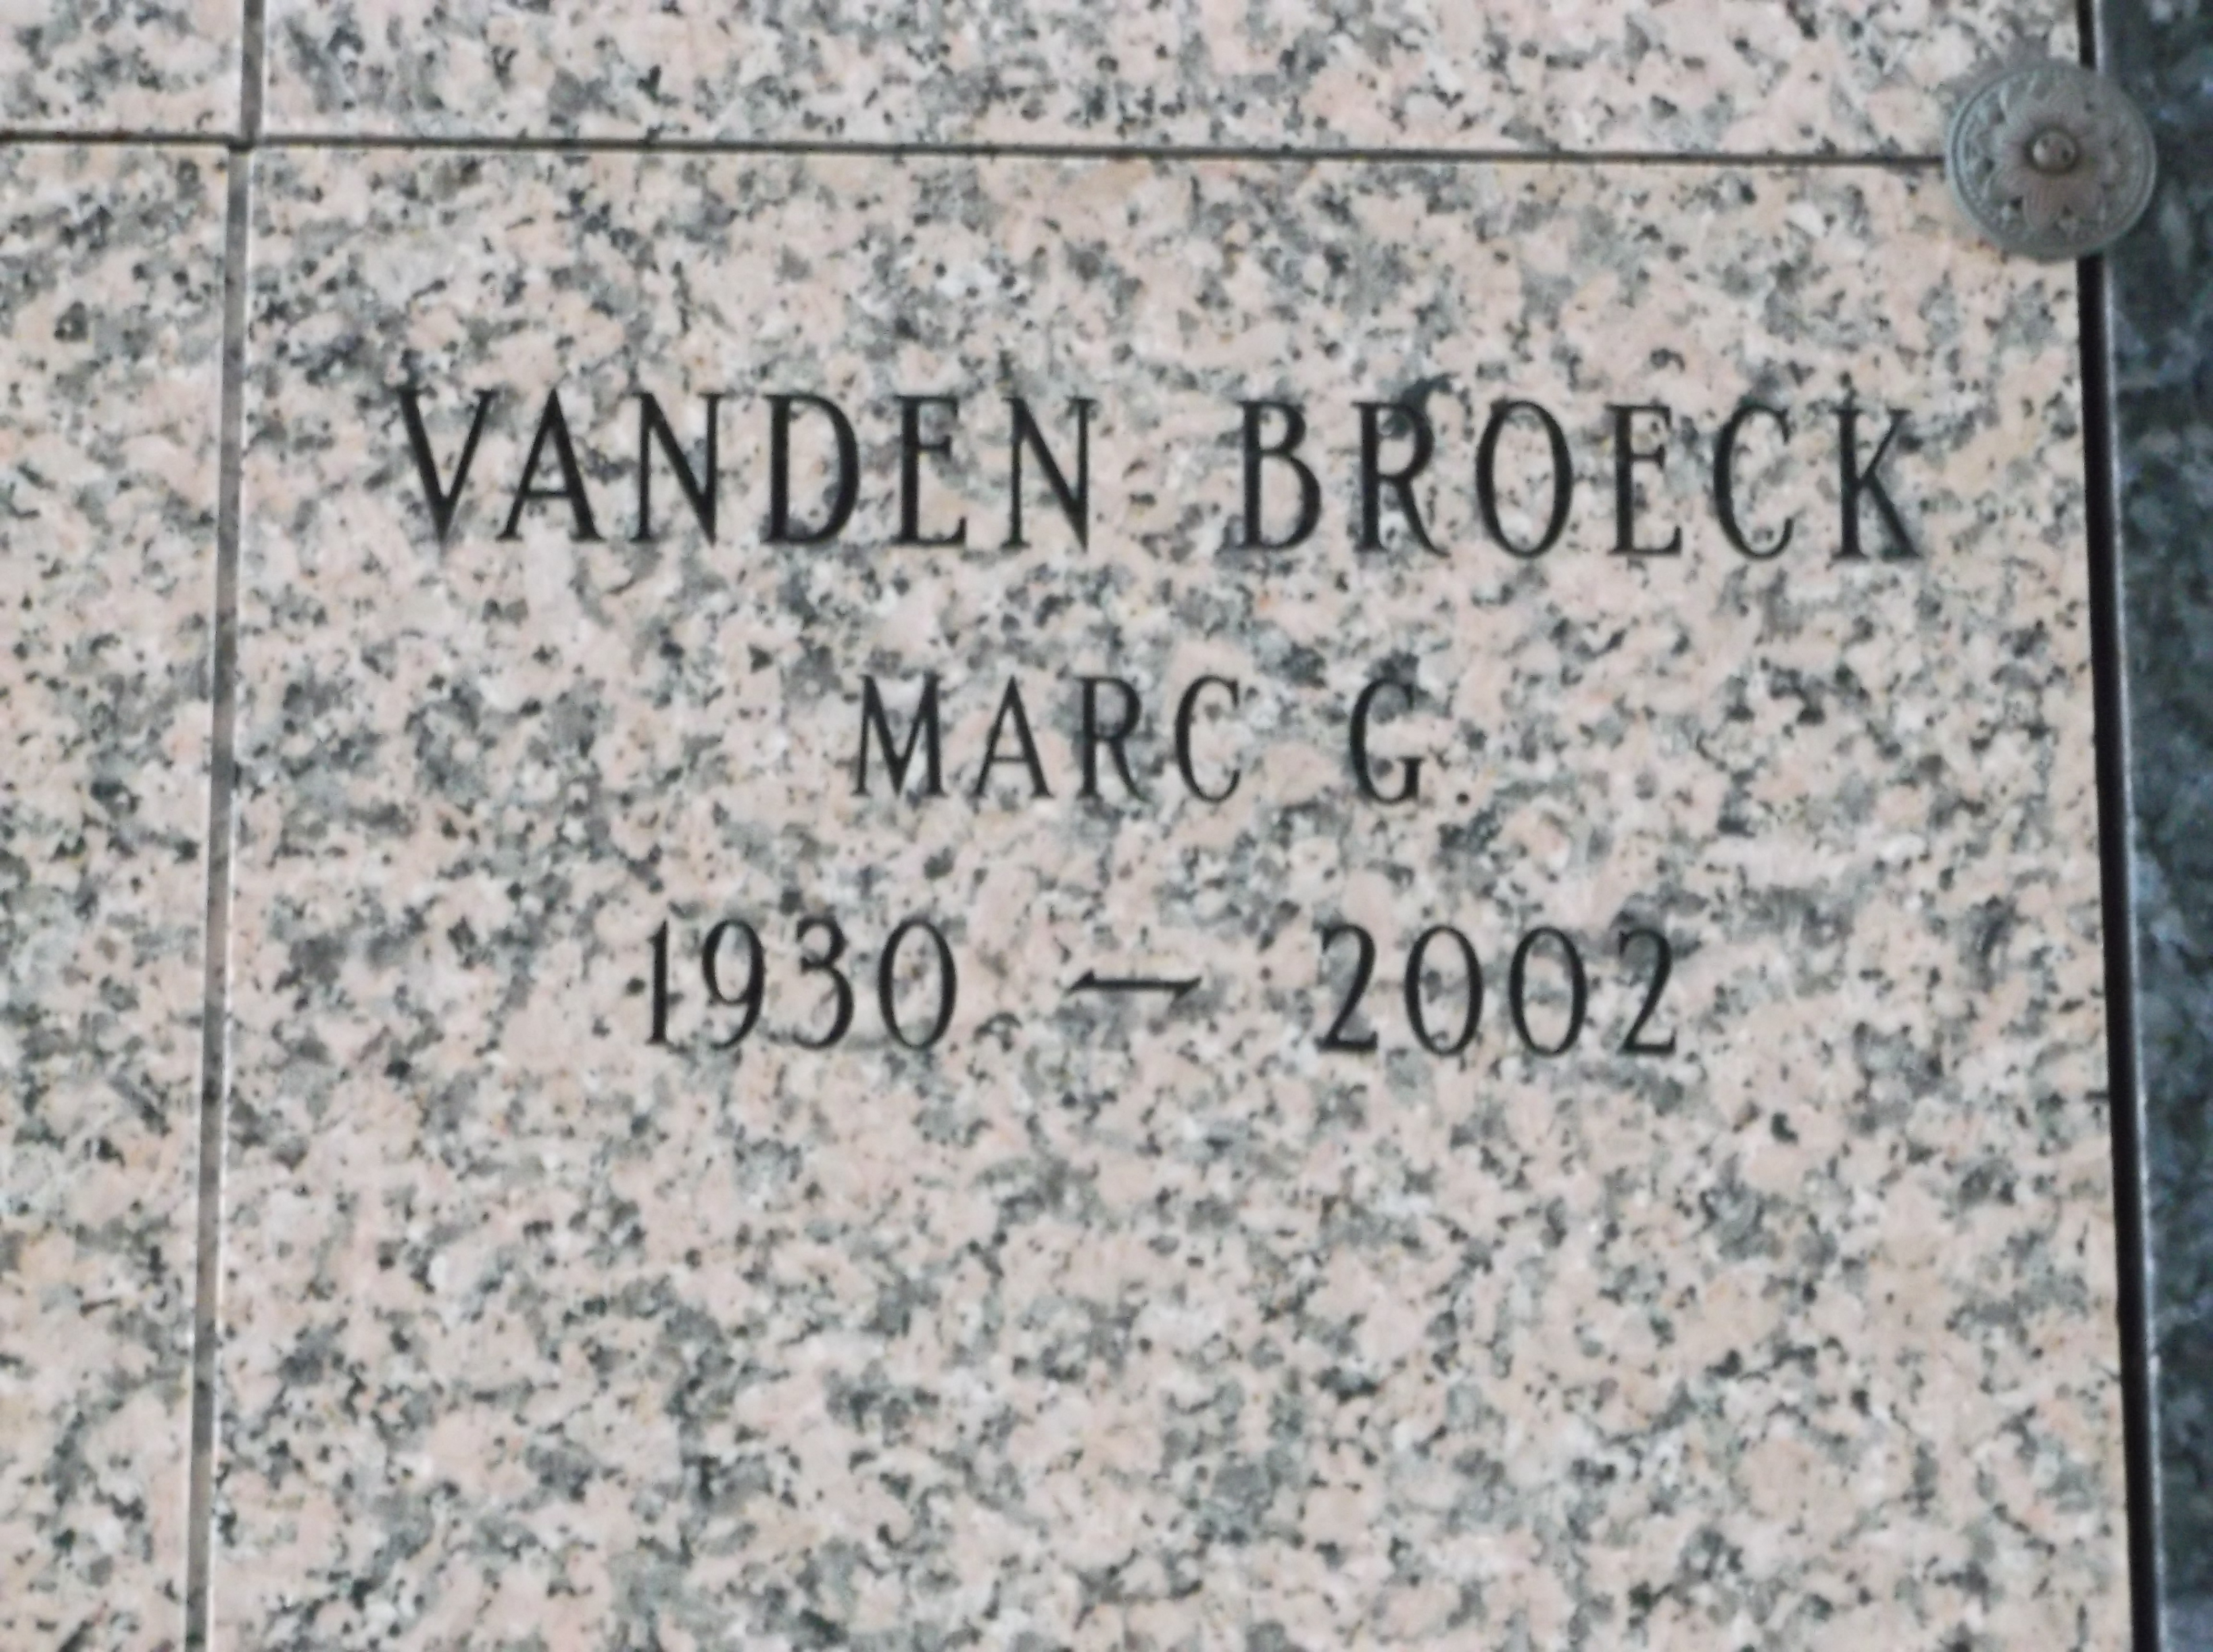 Marc G Vanden Broeck